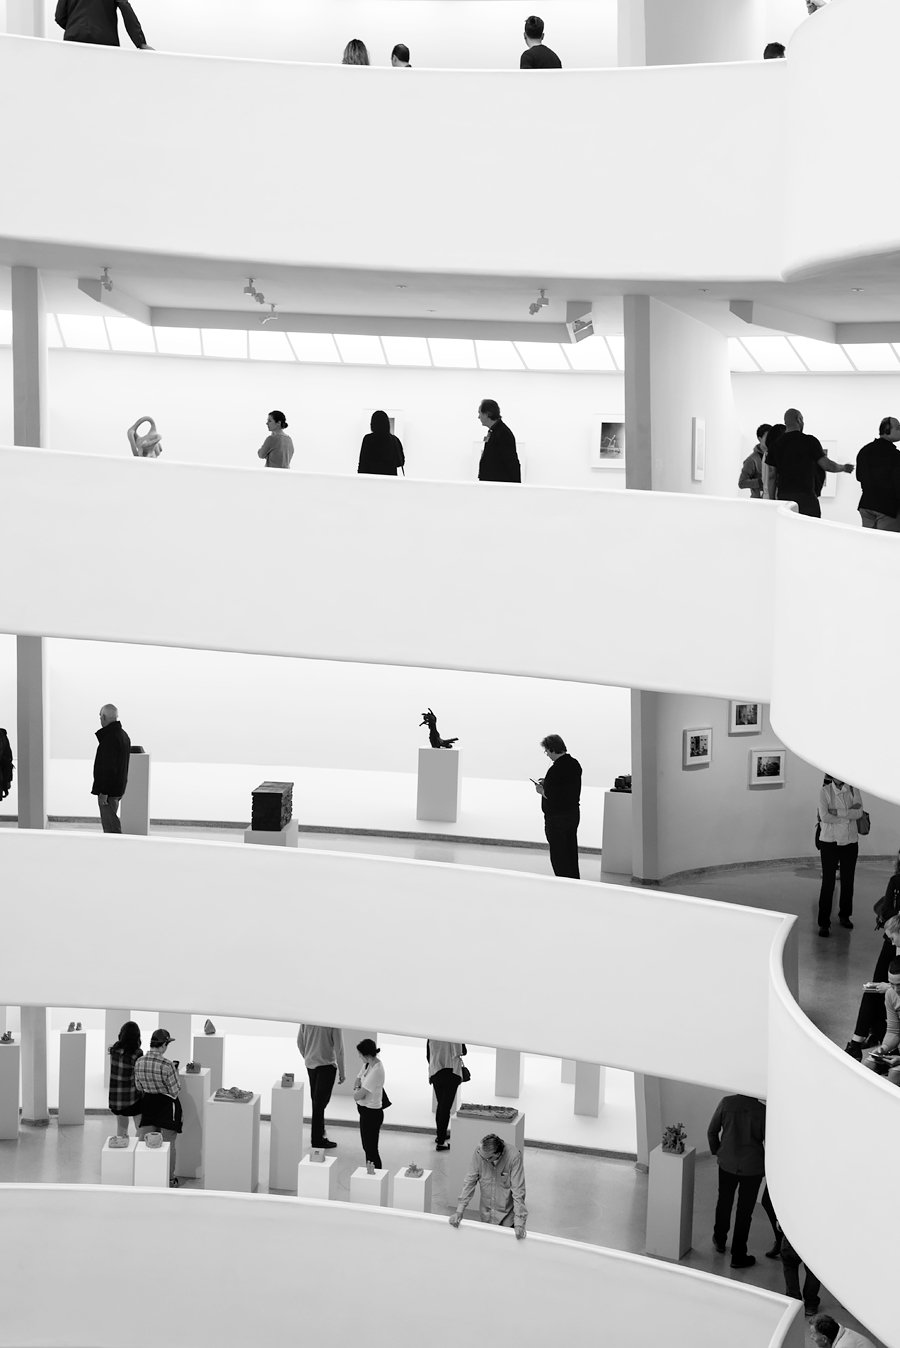 Guggenheim museum in New York. More New York moments on Urban Pixxels: http://urbanpixxels.com/new-york-bw 